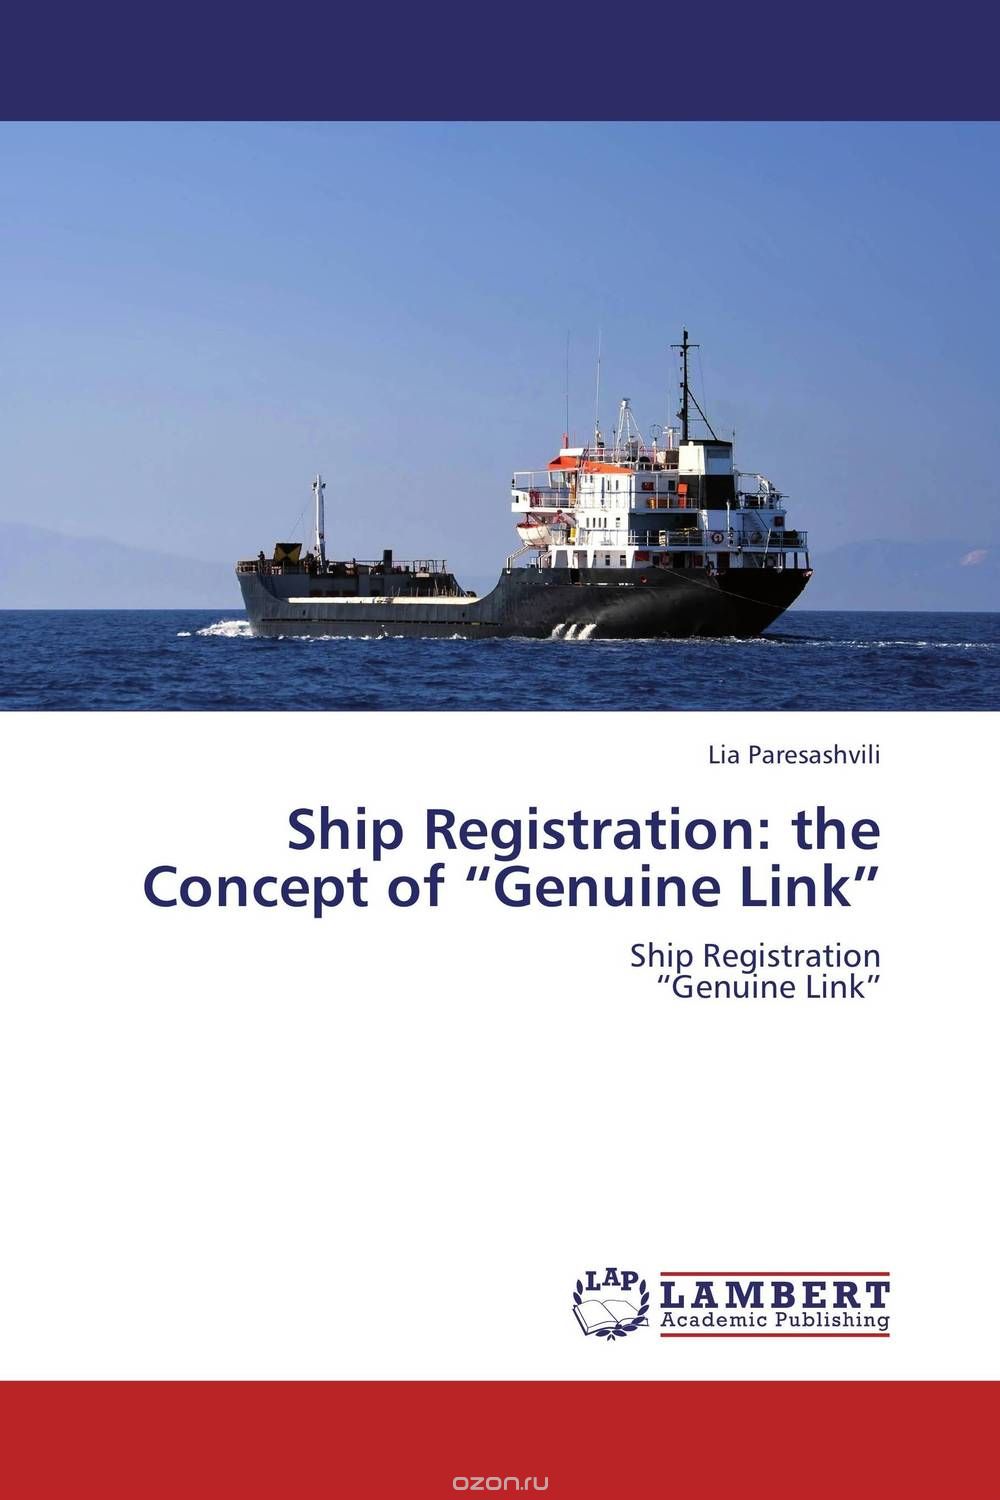 Скачать книгу "Ship Registration: the Concept of “Genuine Link”"